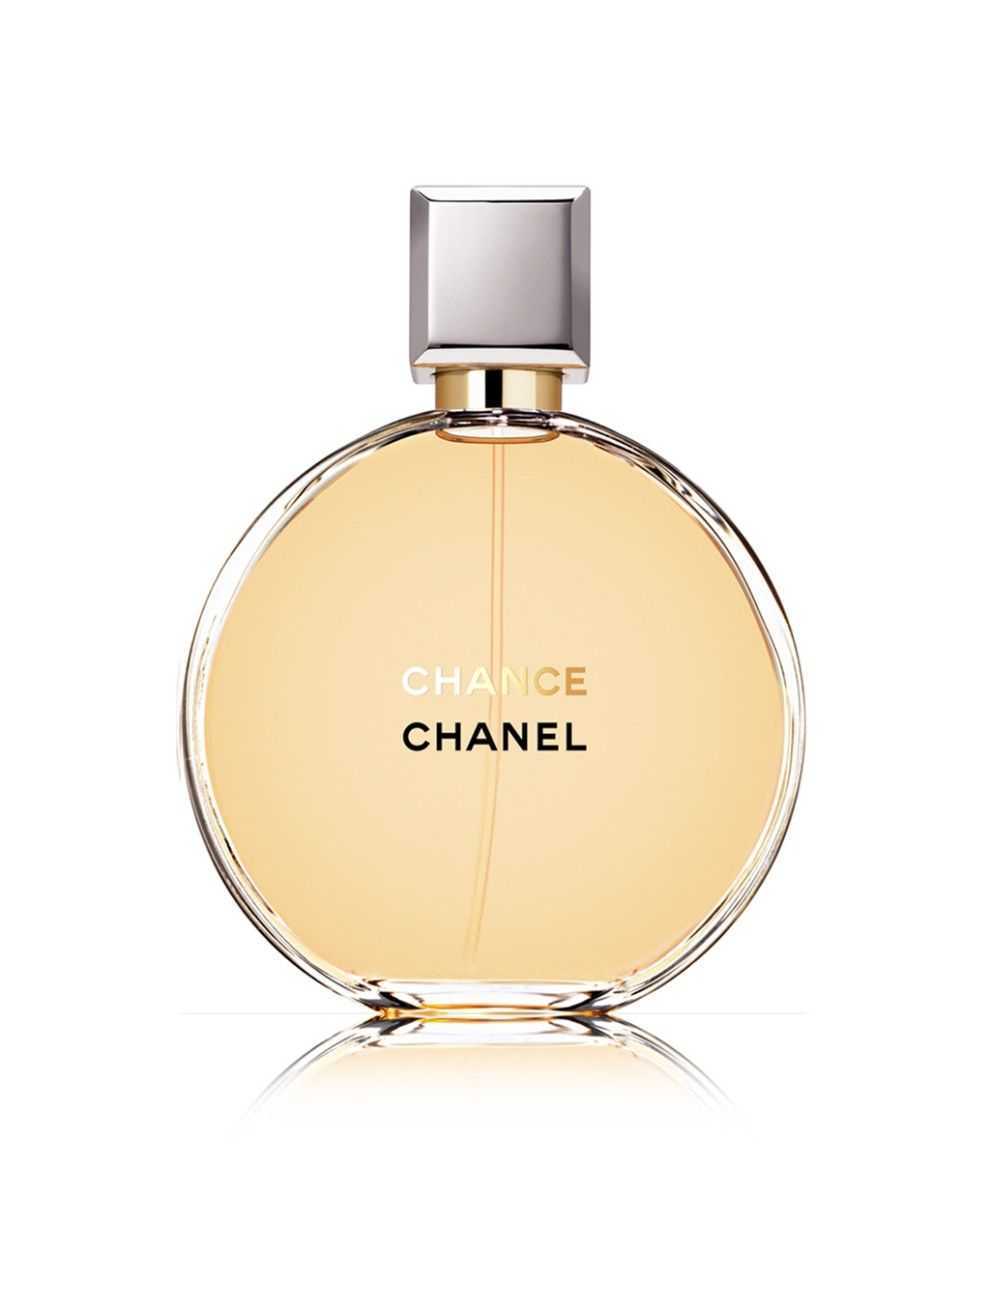 Chanel chance eau tendre как отличить оригинальную воду от подделки